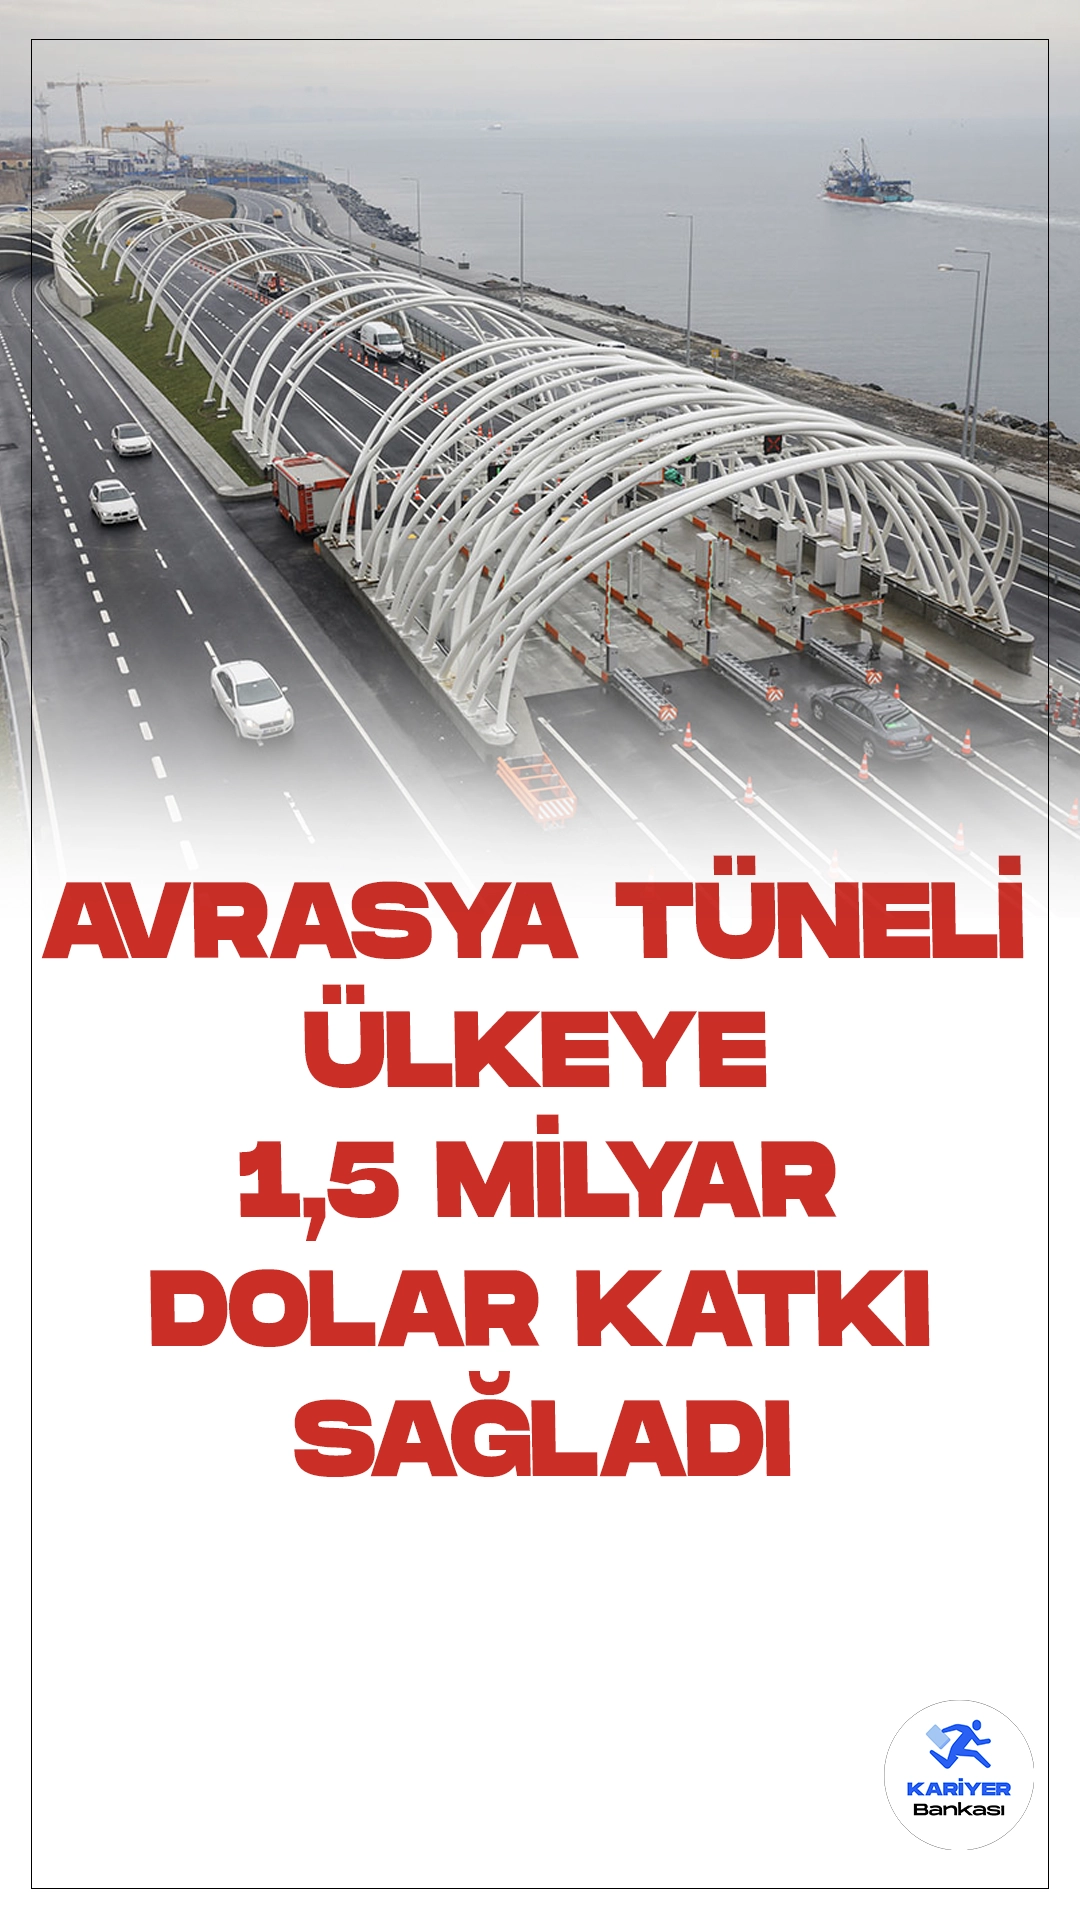 Avrasya Tüneli Ülke Ekonomisine 1,5 Milyar Dolar Katkı Sağladı.Ulaştırma ve Altyapı Bakanı Abdulkadir Uraloğlu, Avrasya Tüneli'nin resmi açılışının 20 Aralık 2016'da gerçekleştiğini hatırlatarak, tünelin 7 yıl içinde tam 7 milyon kullanıcı tarafından toplamda 123 milyon kez geçildiğini açıkladı.